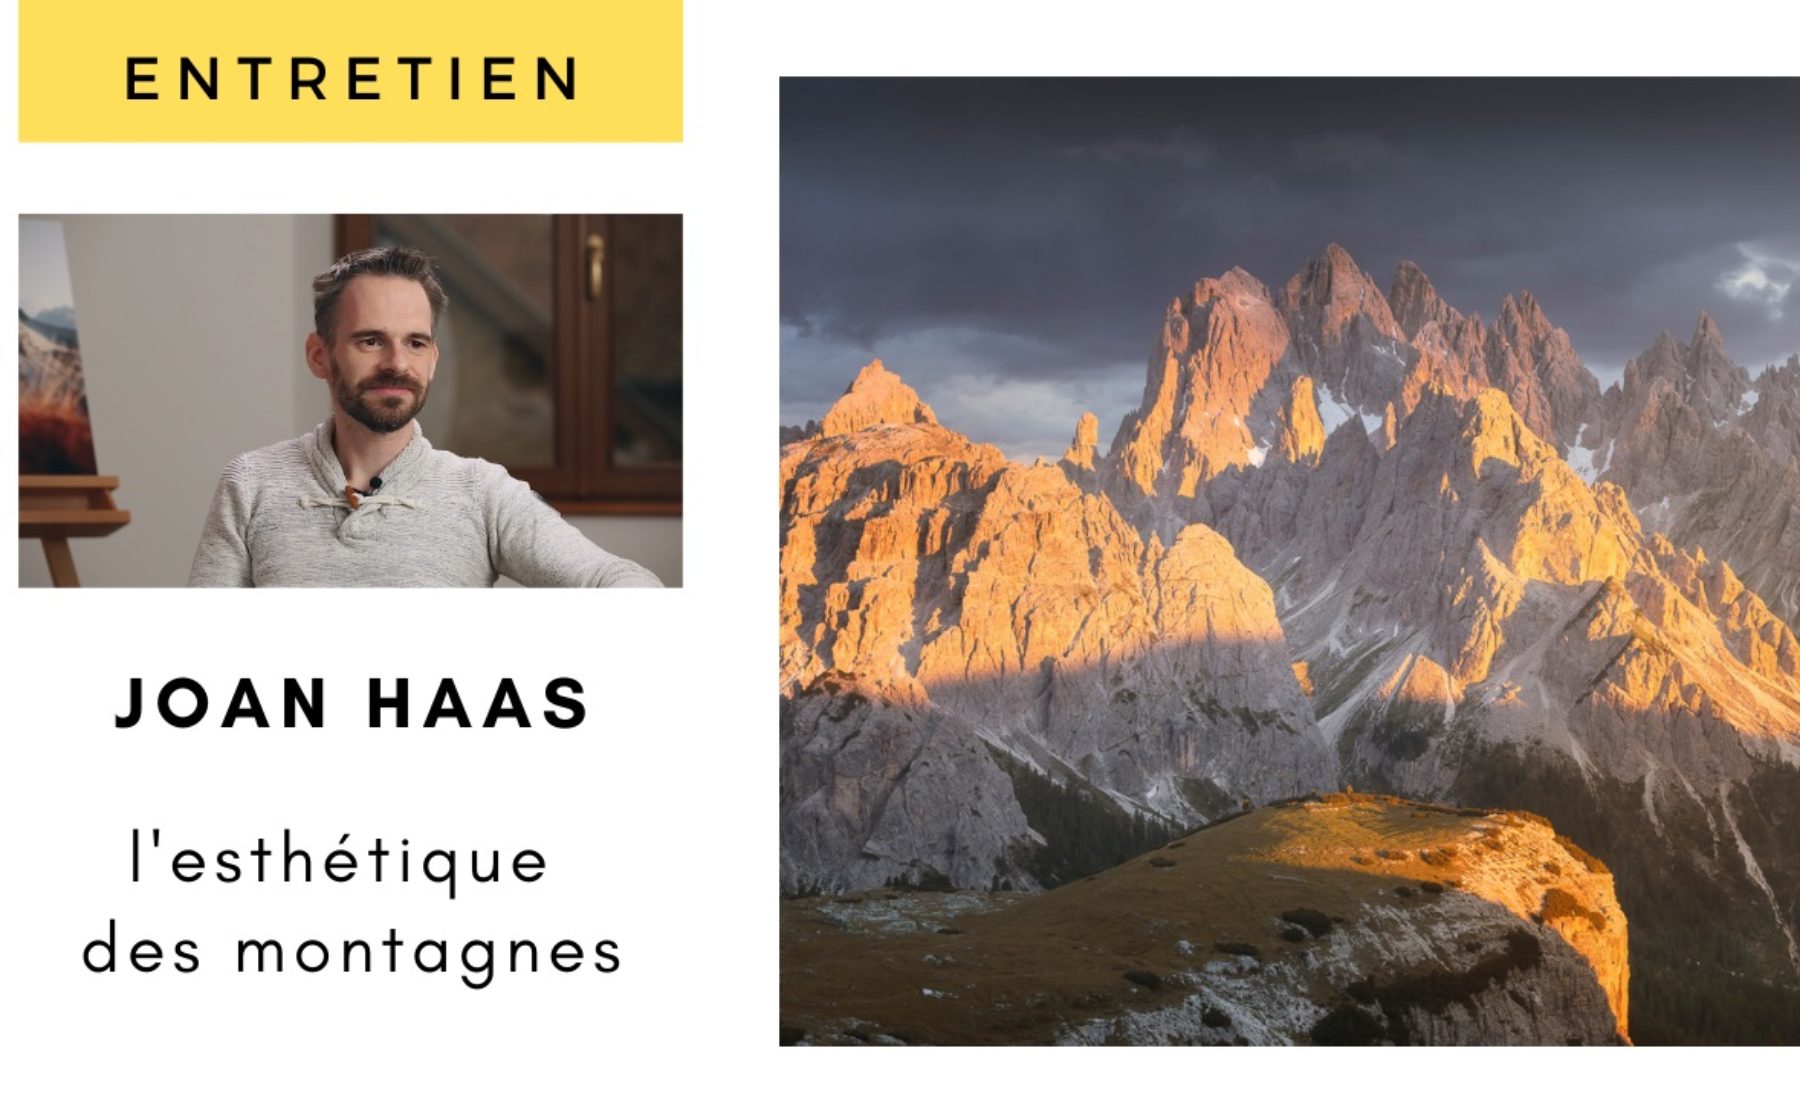 Entretien avec Joan Haas – Photographier l’esthétique des montagnes